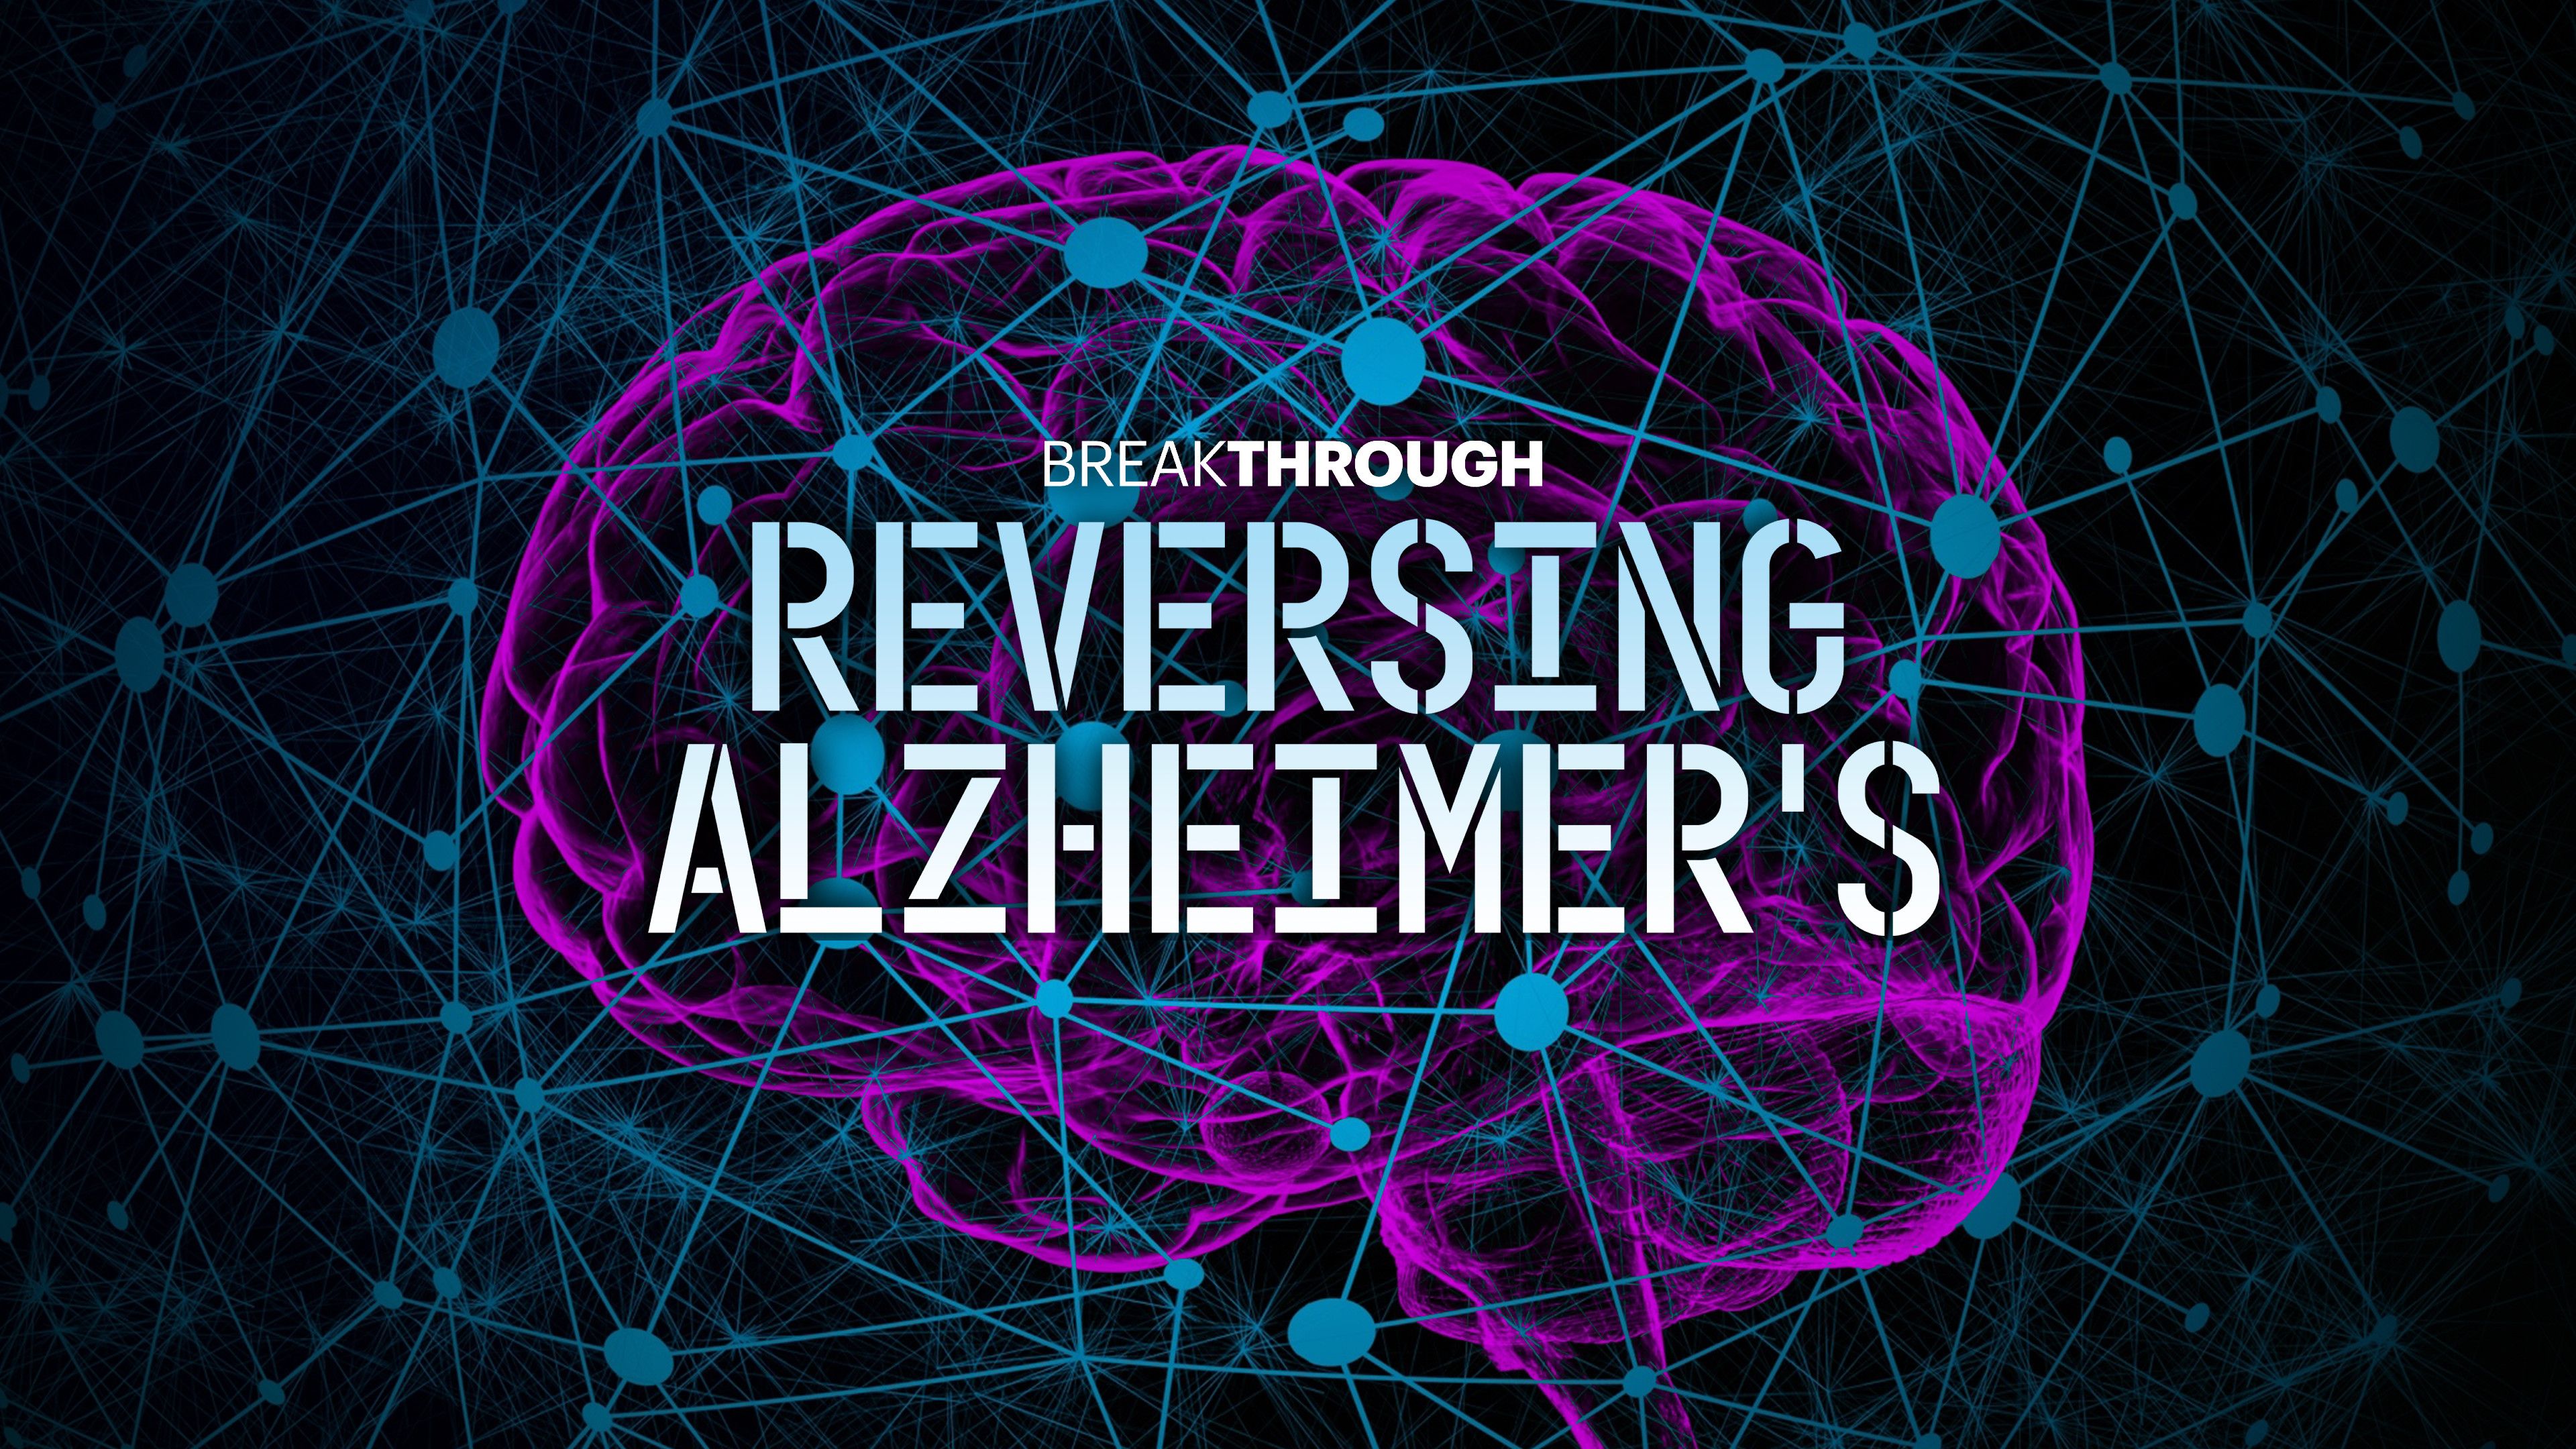 Reversing Alzheimer's